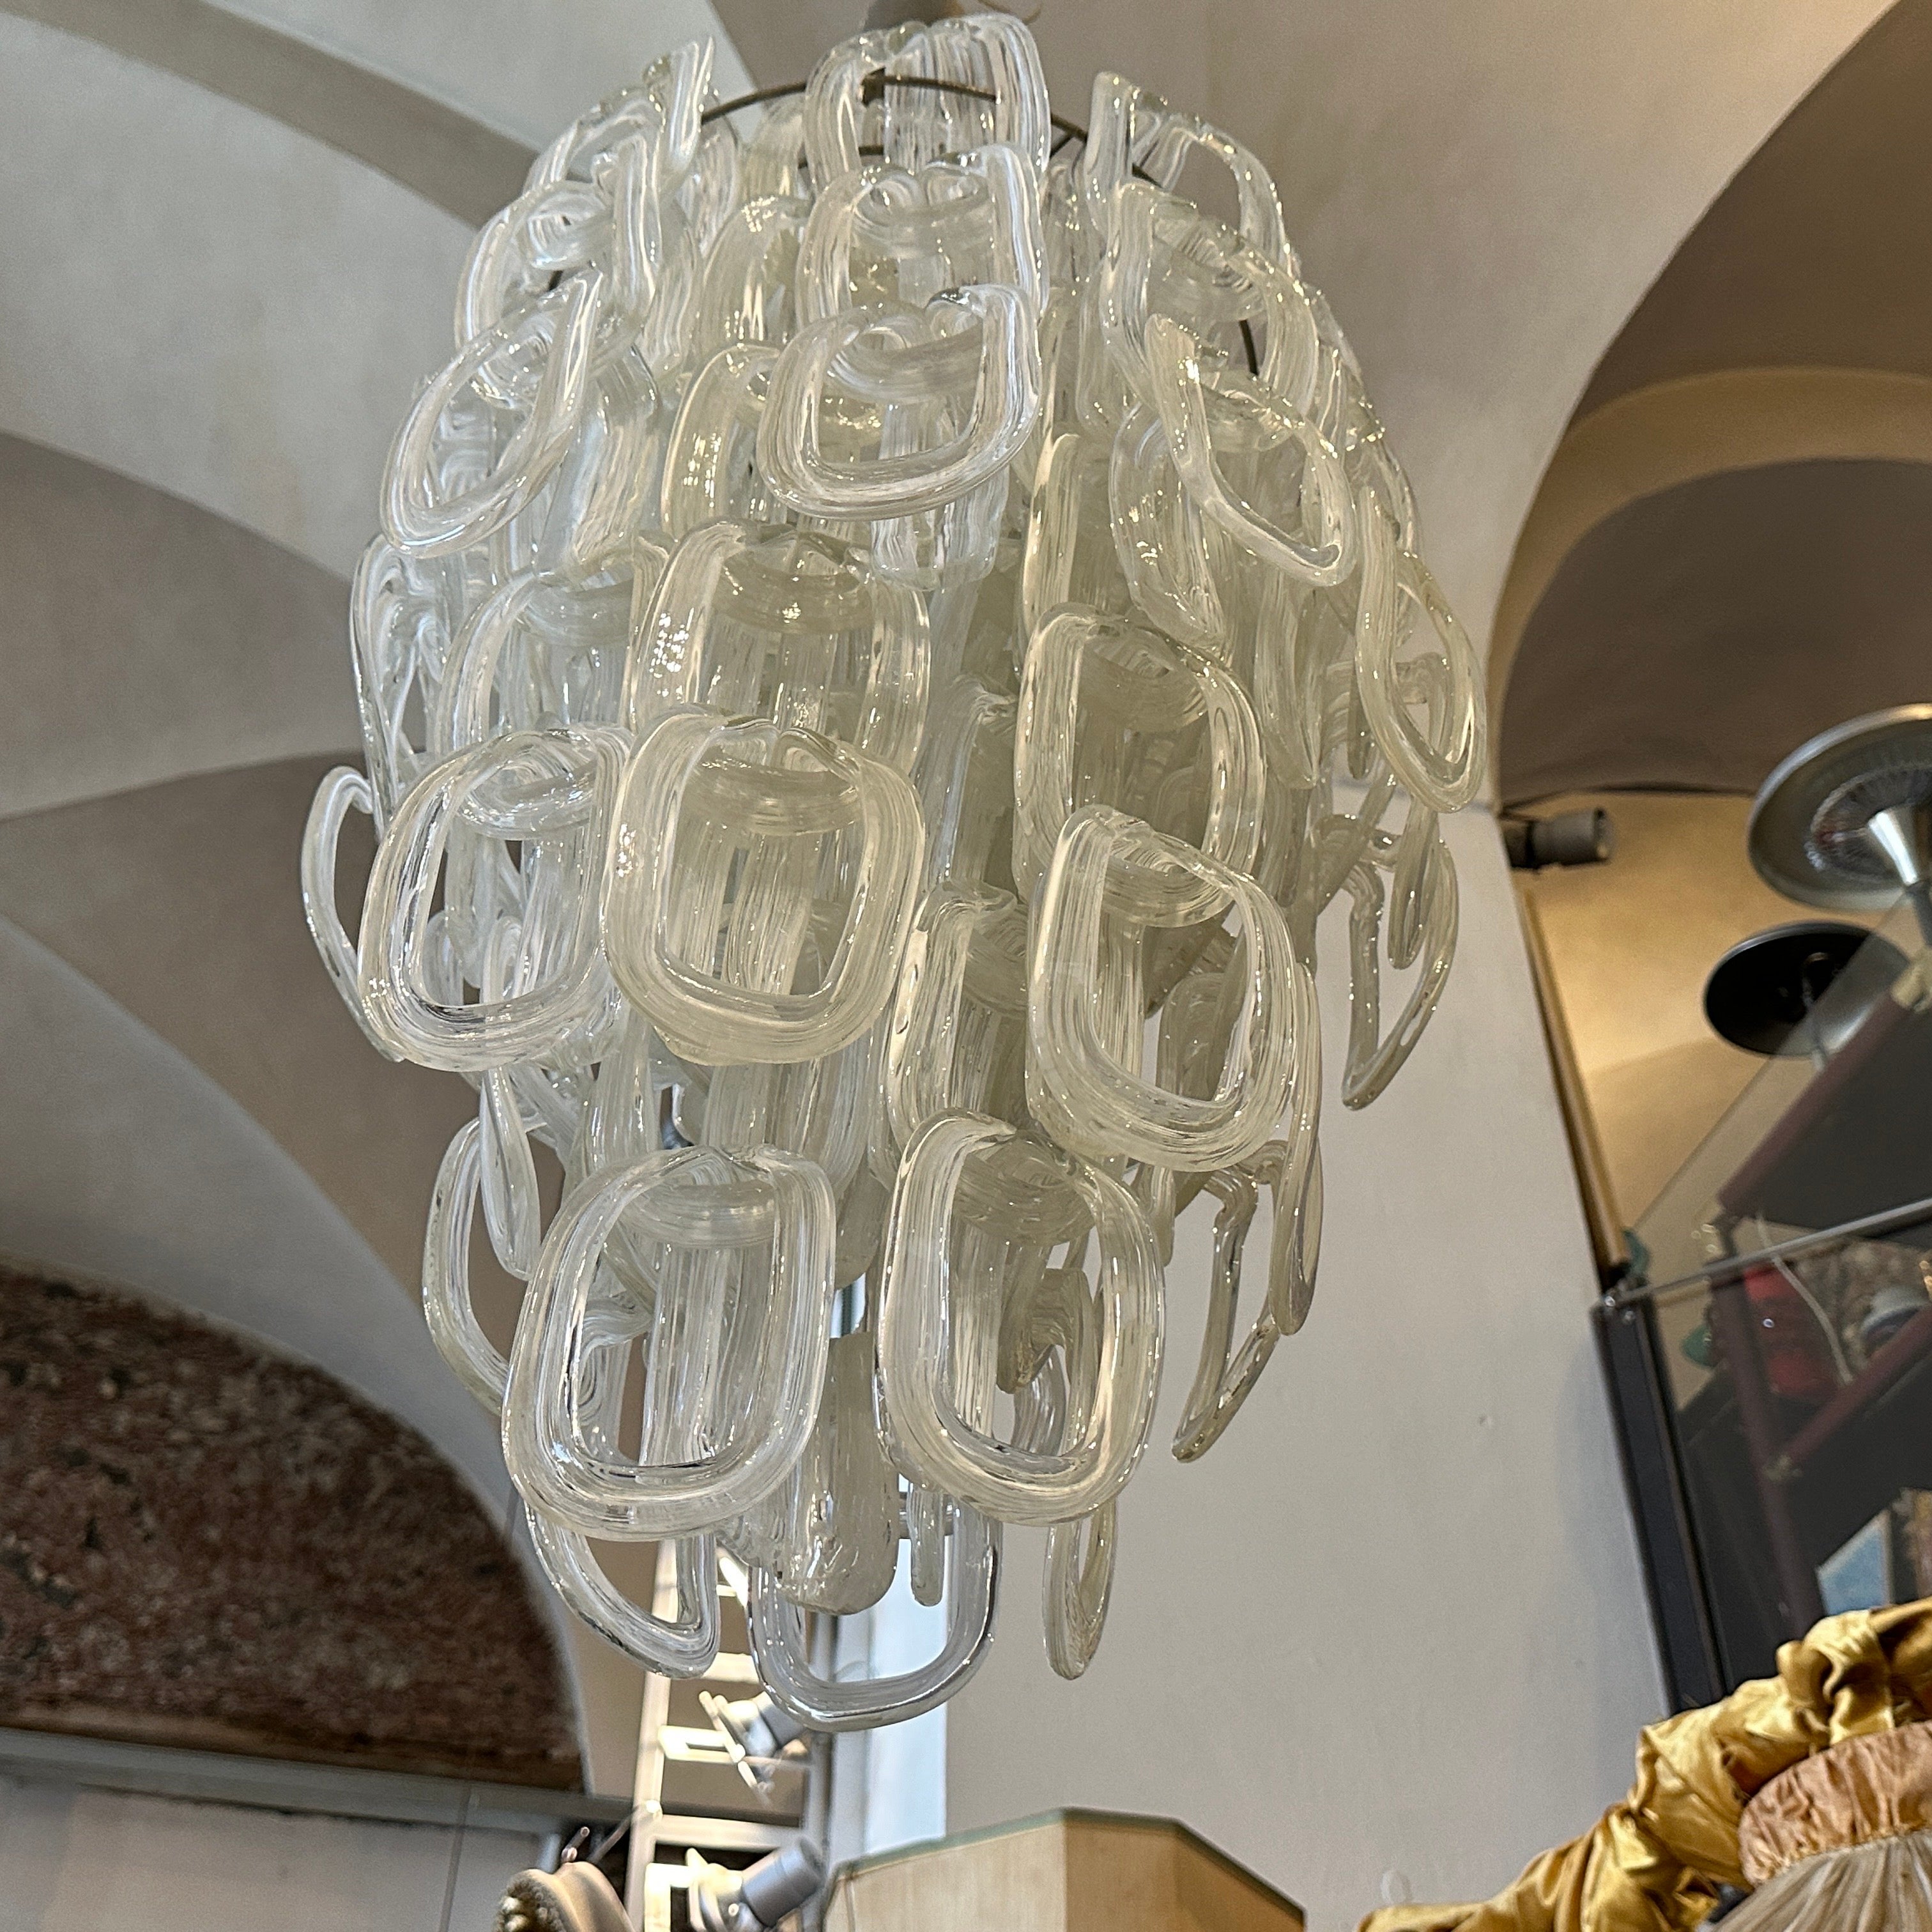 Un étonnant lustre moderniste en verre blanc de Murano giogali, conçu par Angelo Mangiarotti et fabriqué par Vistosi dans les années soixante-dix. Grâce à sa construction, vous pouvez modifier facilement la hauteur et le diamètre du lustre. Il